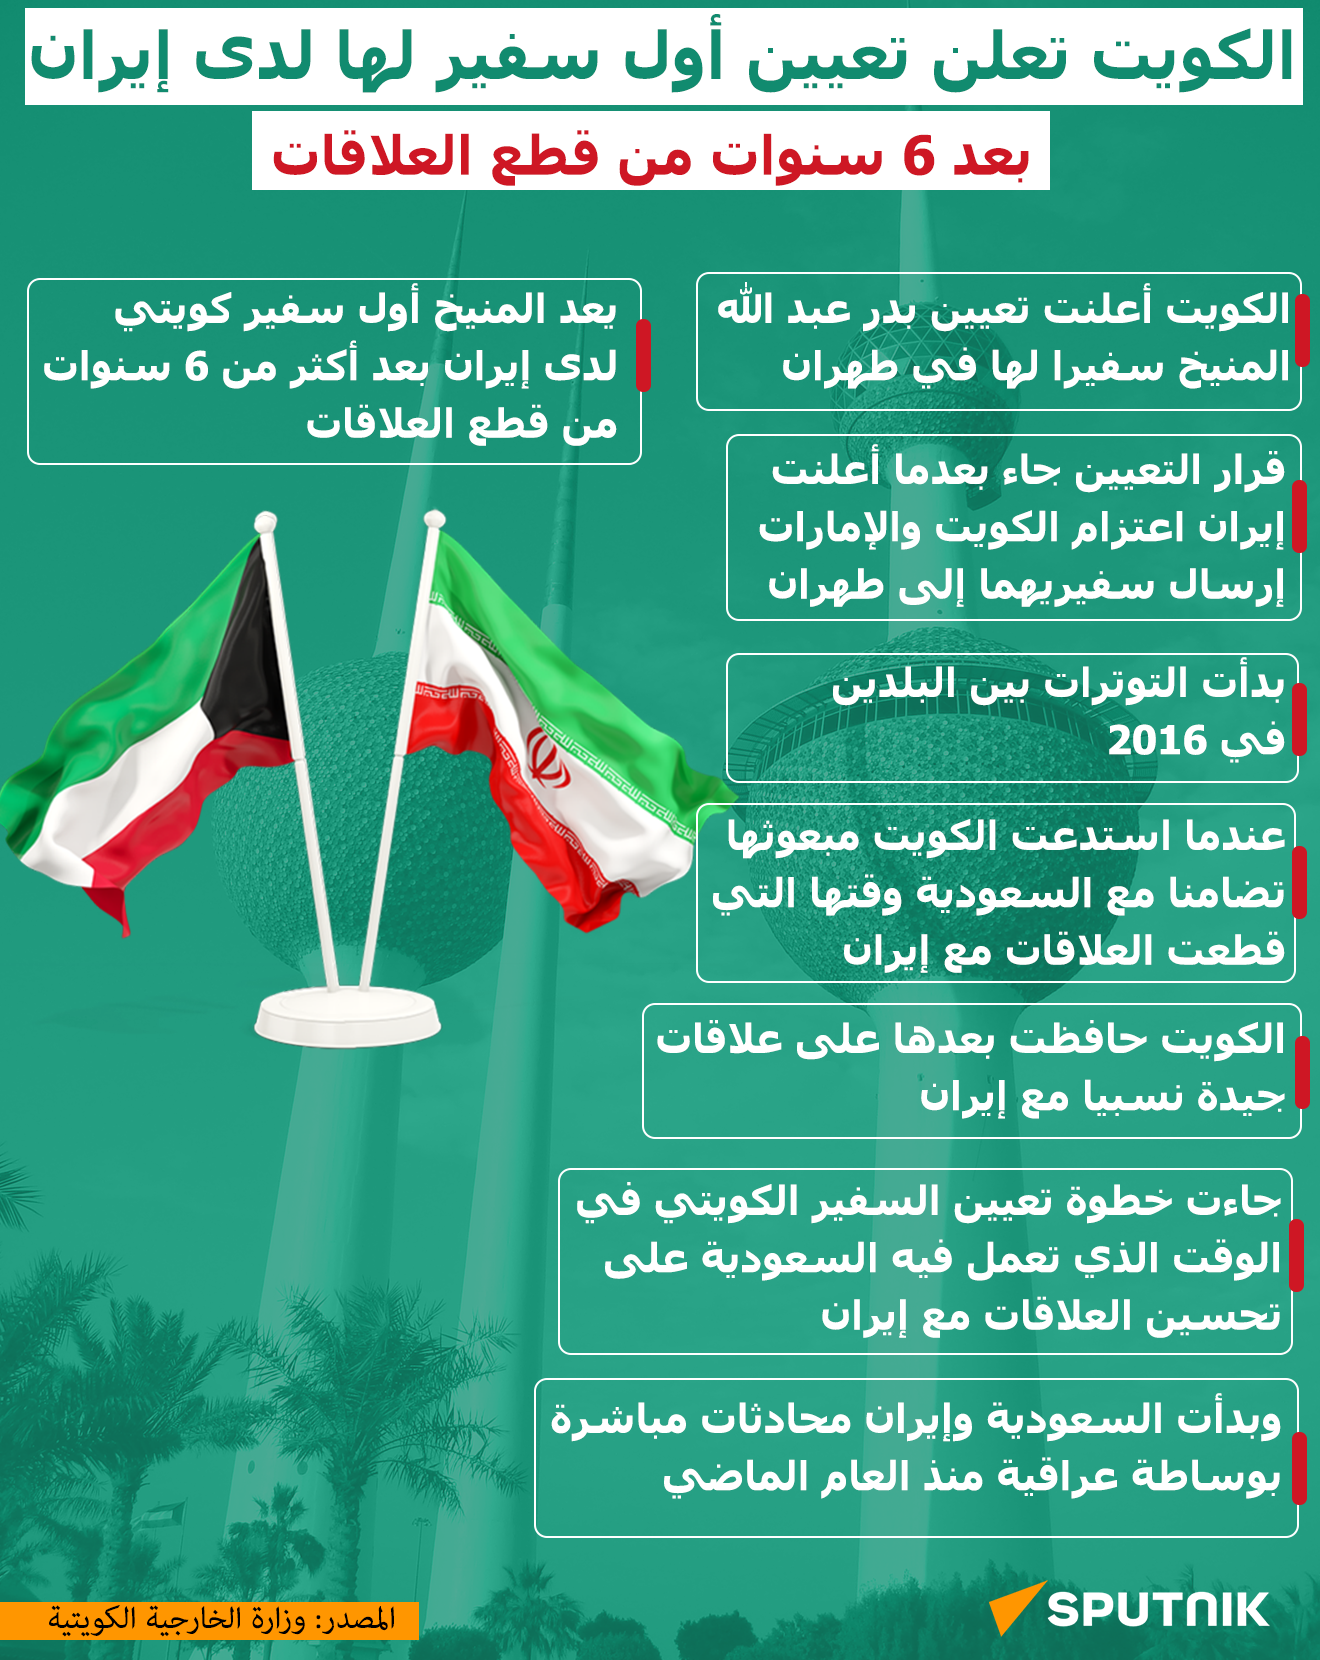 الكويت تعلن تعيين أول سفير لها لدى إيران بعد 6 سنوات من قطع العلاقات - سبوتنيك عربي